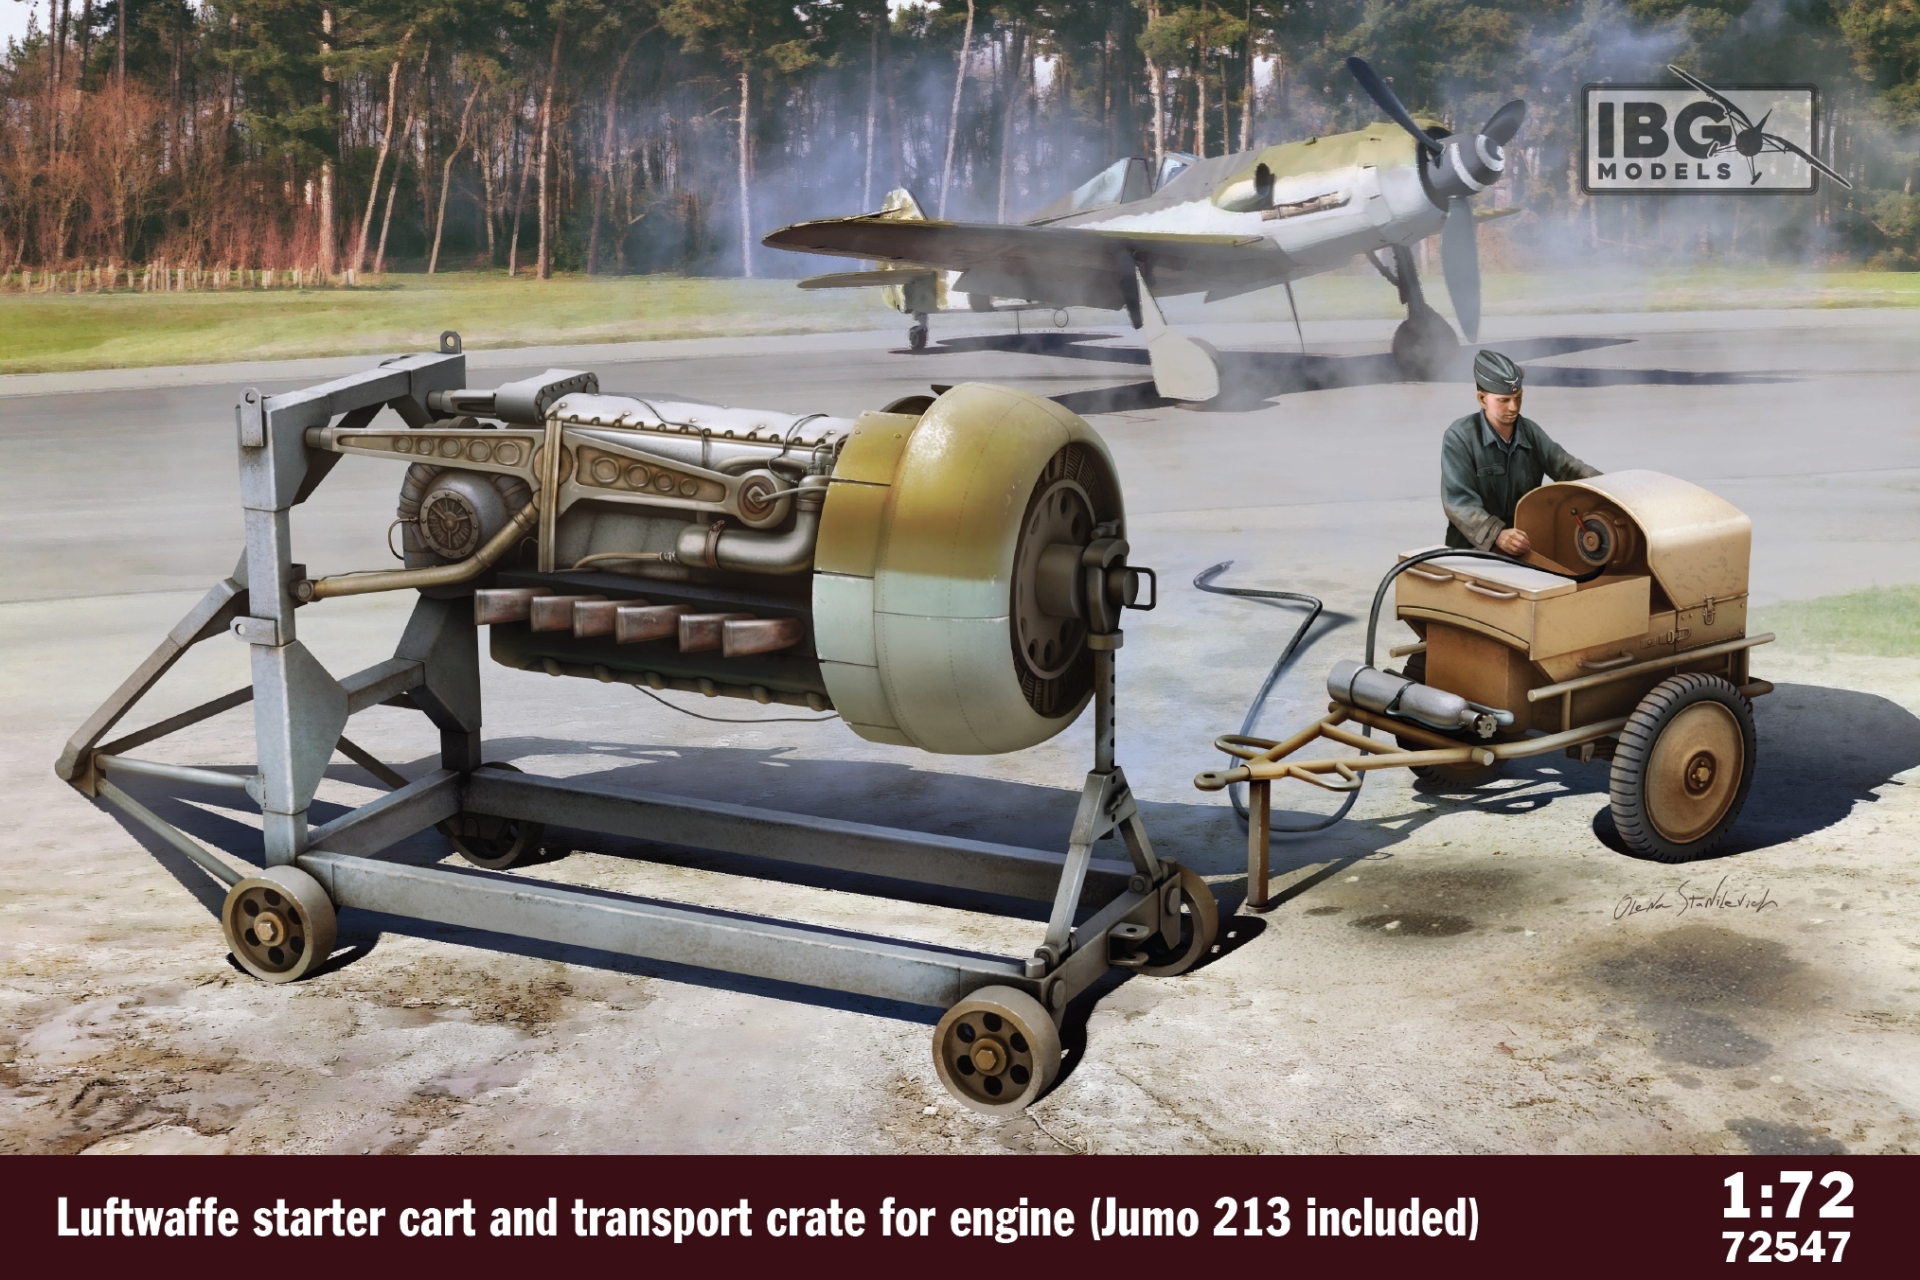 Luftwaffe Starter Cart & Transport Crate wi Jumo 213 enghie